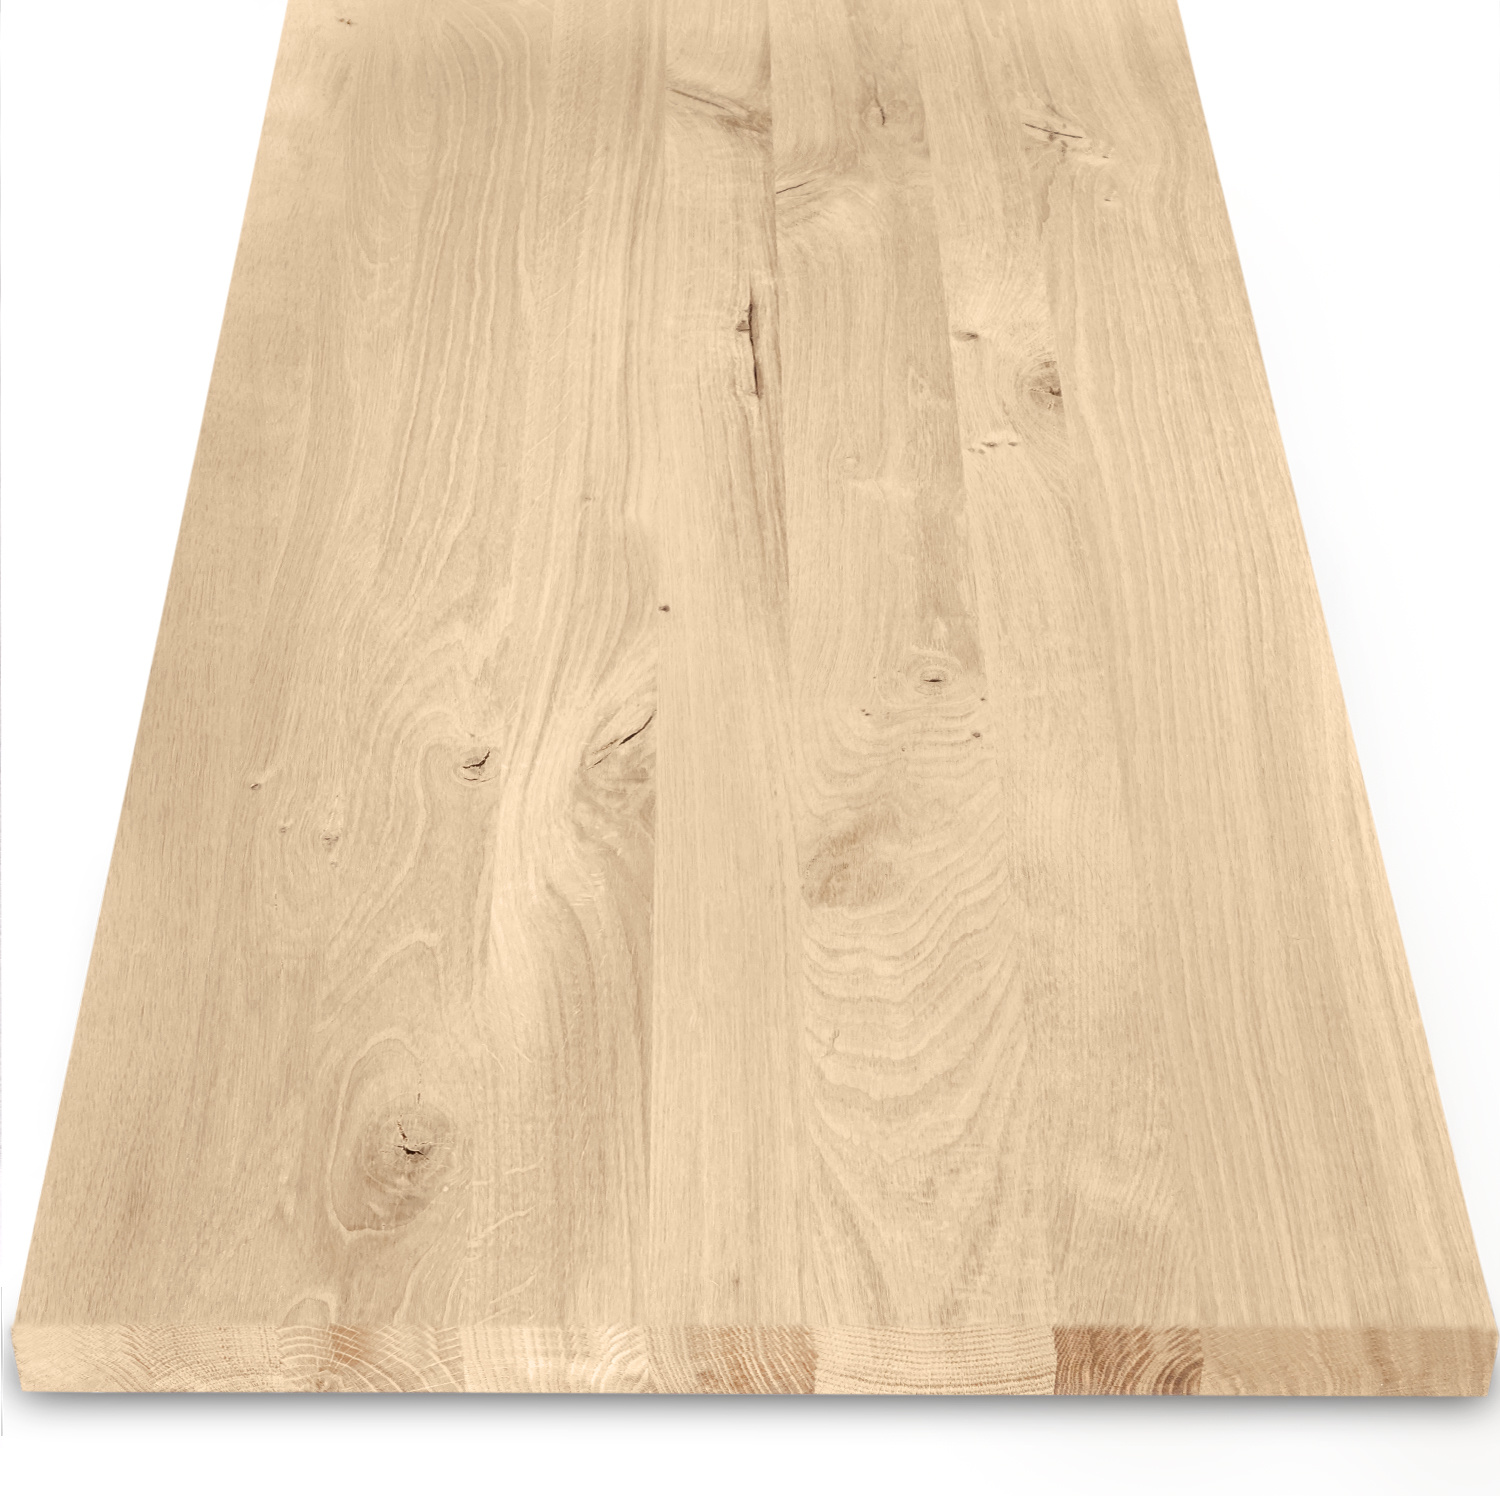  Eiken blad / meubelblad op maat - 4 cm dik (1-laag) - incl. uitsparing - rustiek Europees eikenhout - verlijmd kd 8-12% - 15-120x20-300 cm